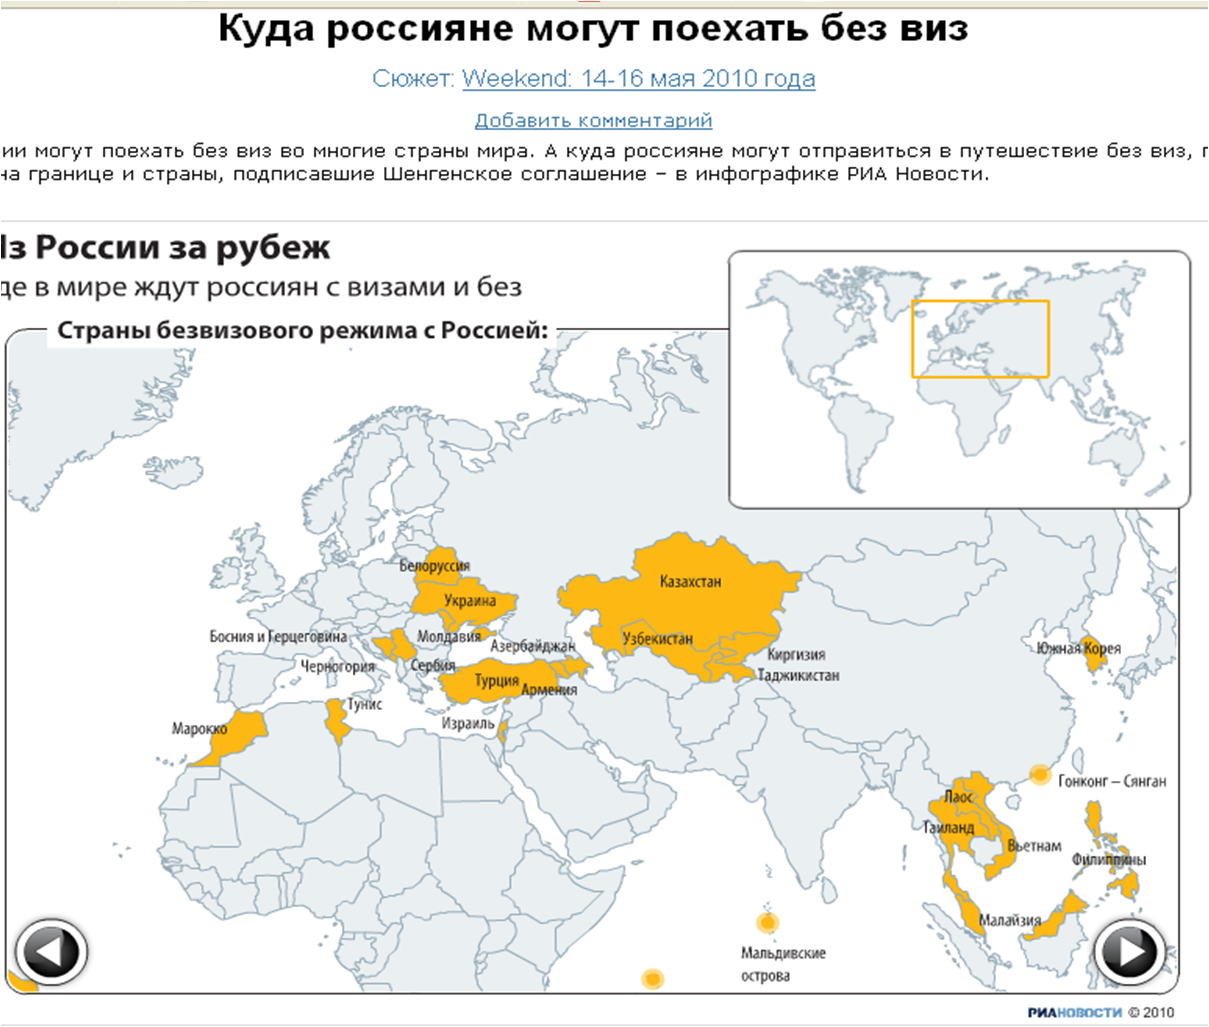 Страны без визы для России. Куда россияне могут поехать без визы. Безвизовые страны для России. Карта стран куда можно поехать россиянам.